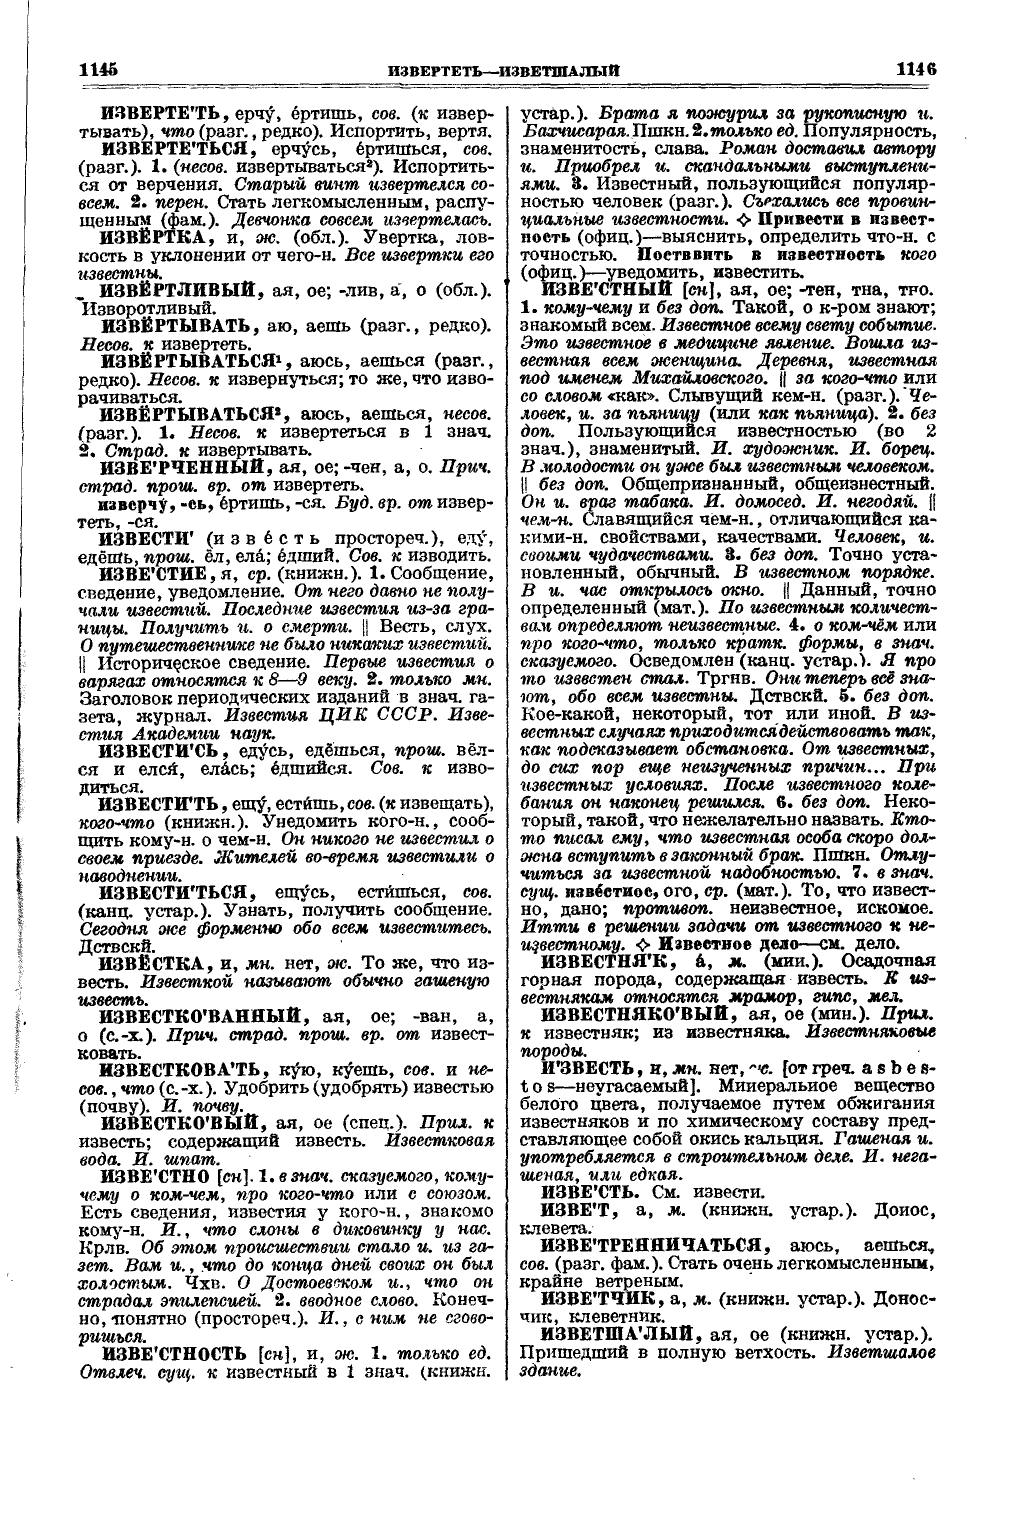 Фотокопия pdf / скан страницы 611 толкового словаря Ушакова (том 1)